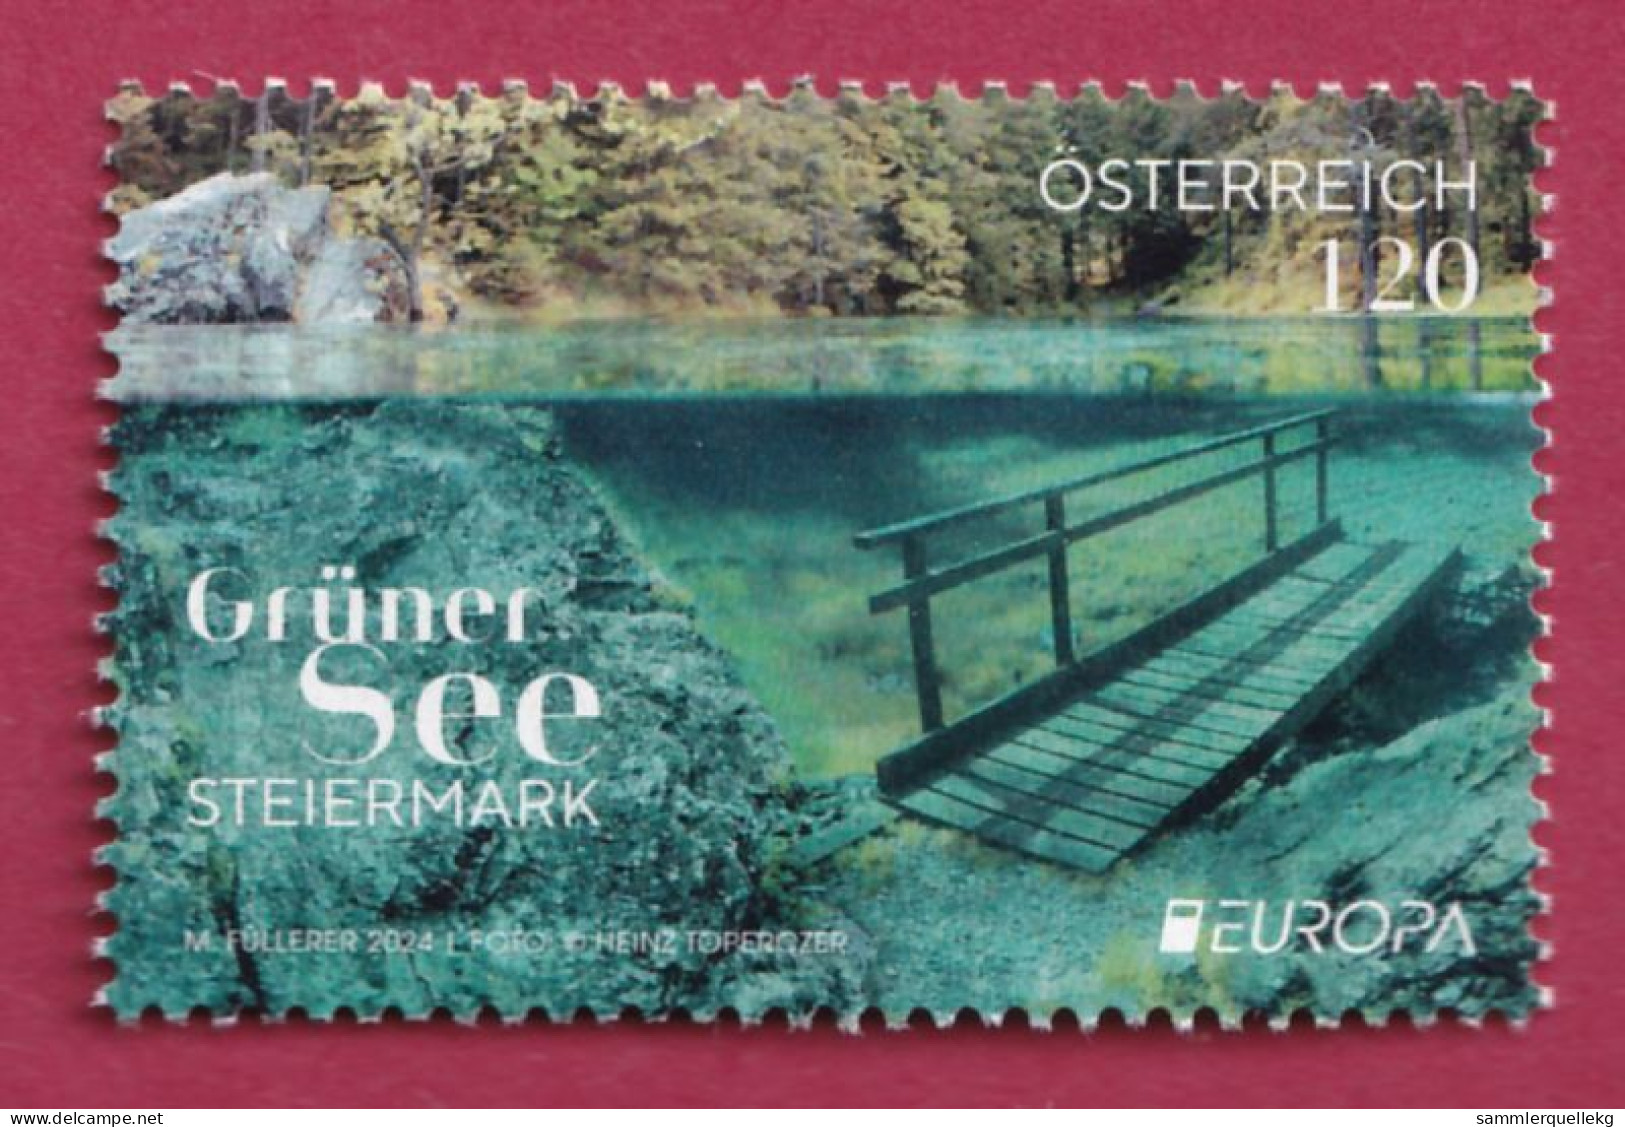 Österreich Europa 2024: Grüner See Postfrisch - Unused Stamps